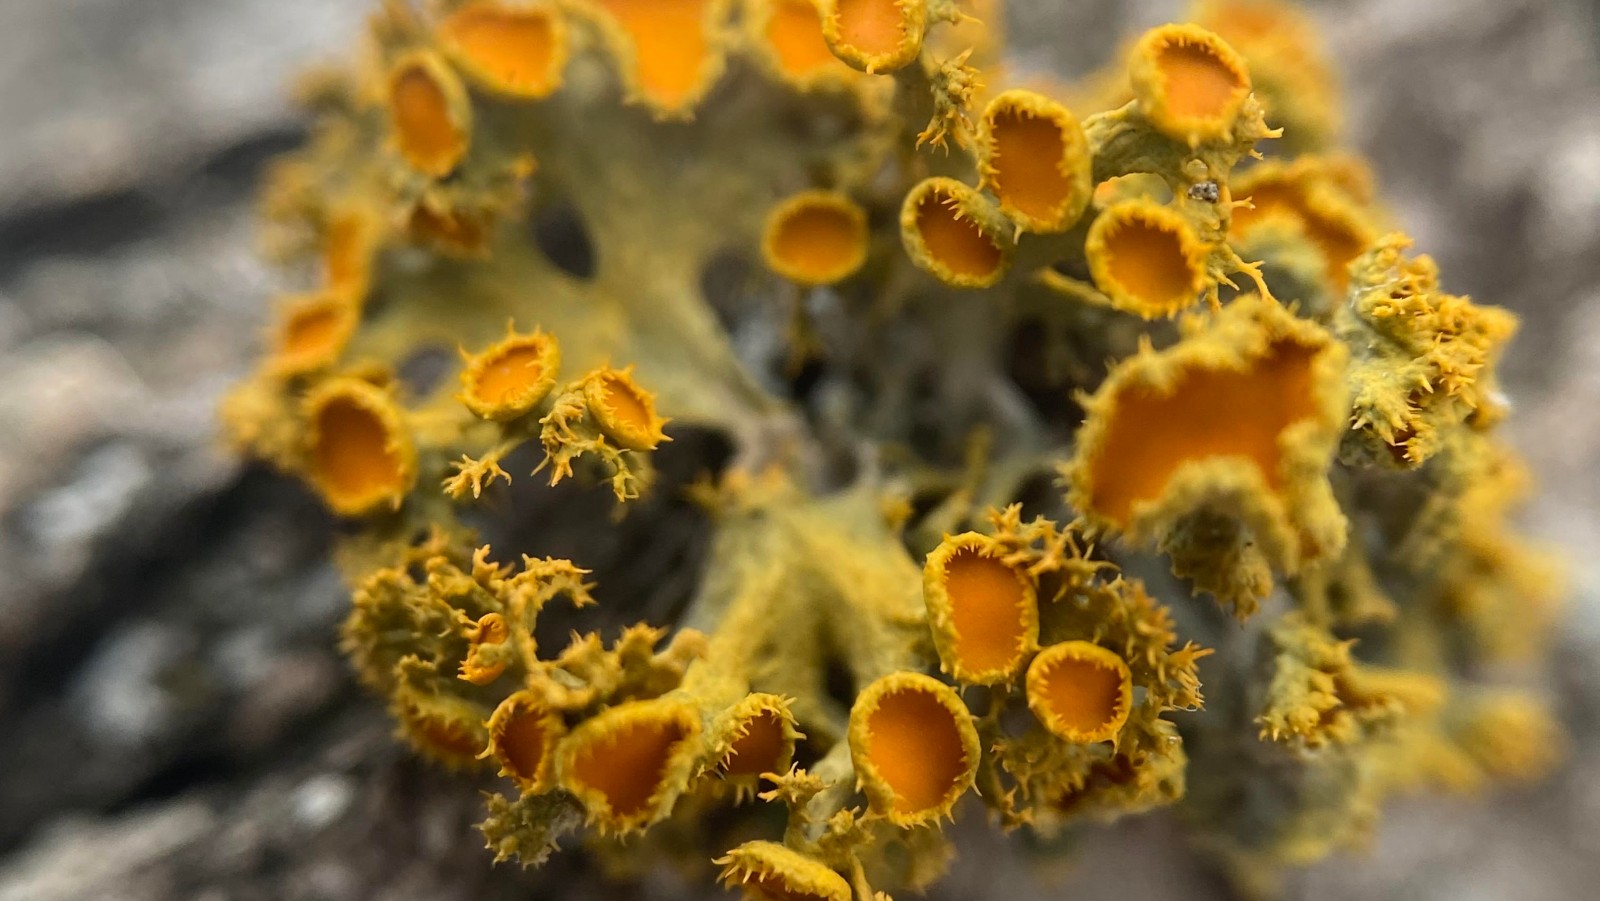 220513-lichens-spribille-teaser-16x9-1600px.jpg